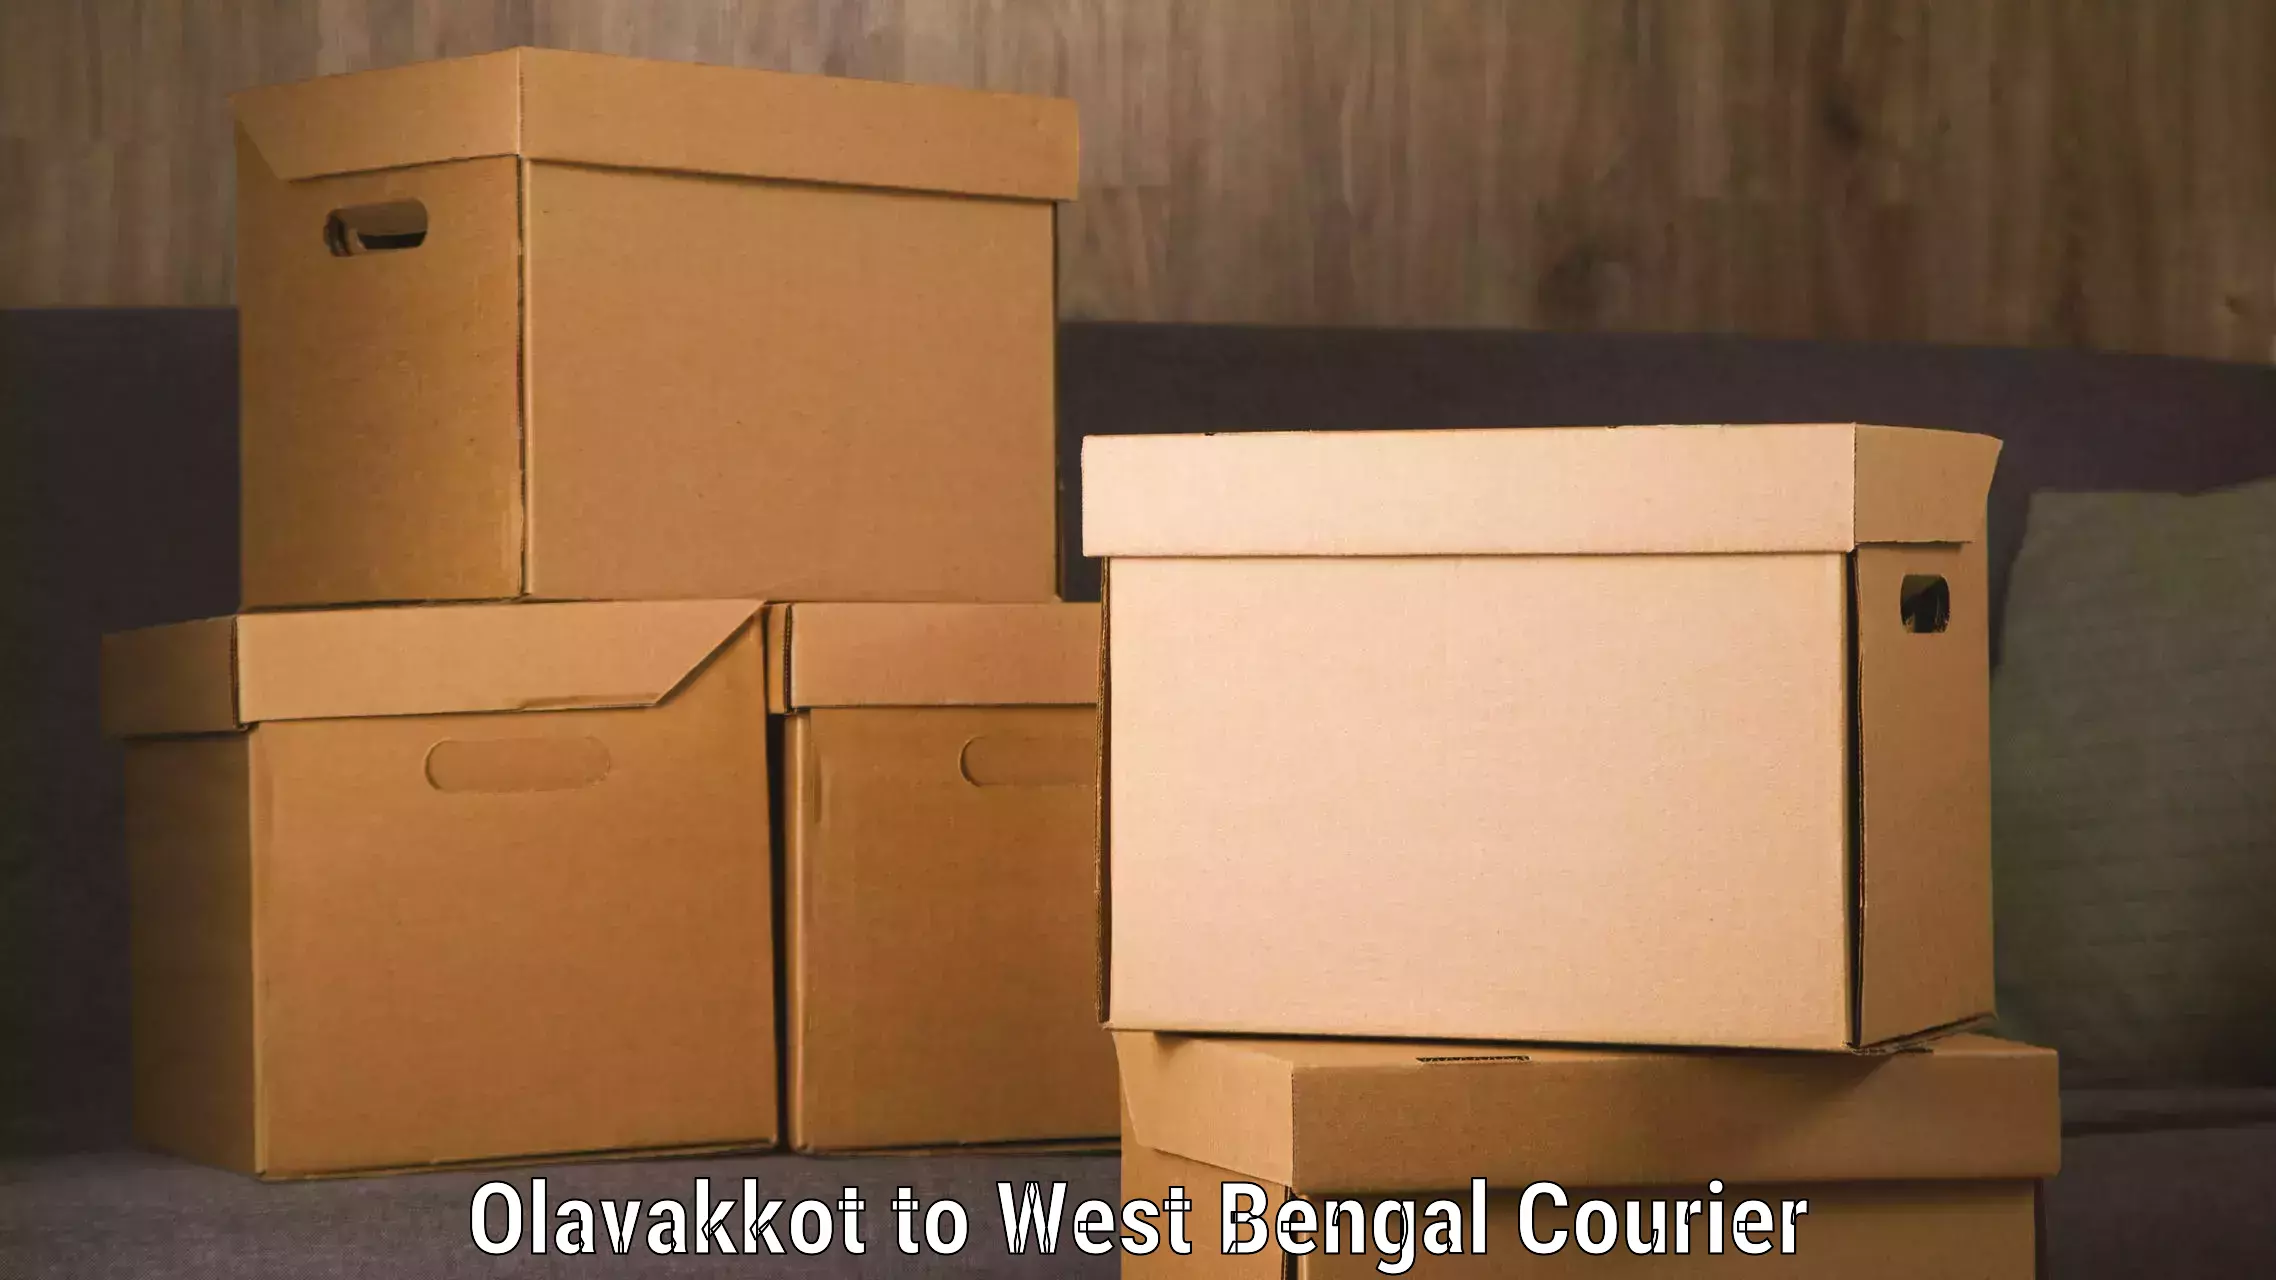 Efficient order fulfillment in Olavakkot to IIIT Kalyani